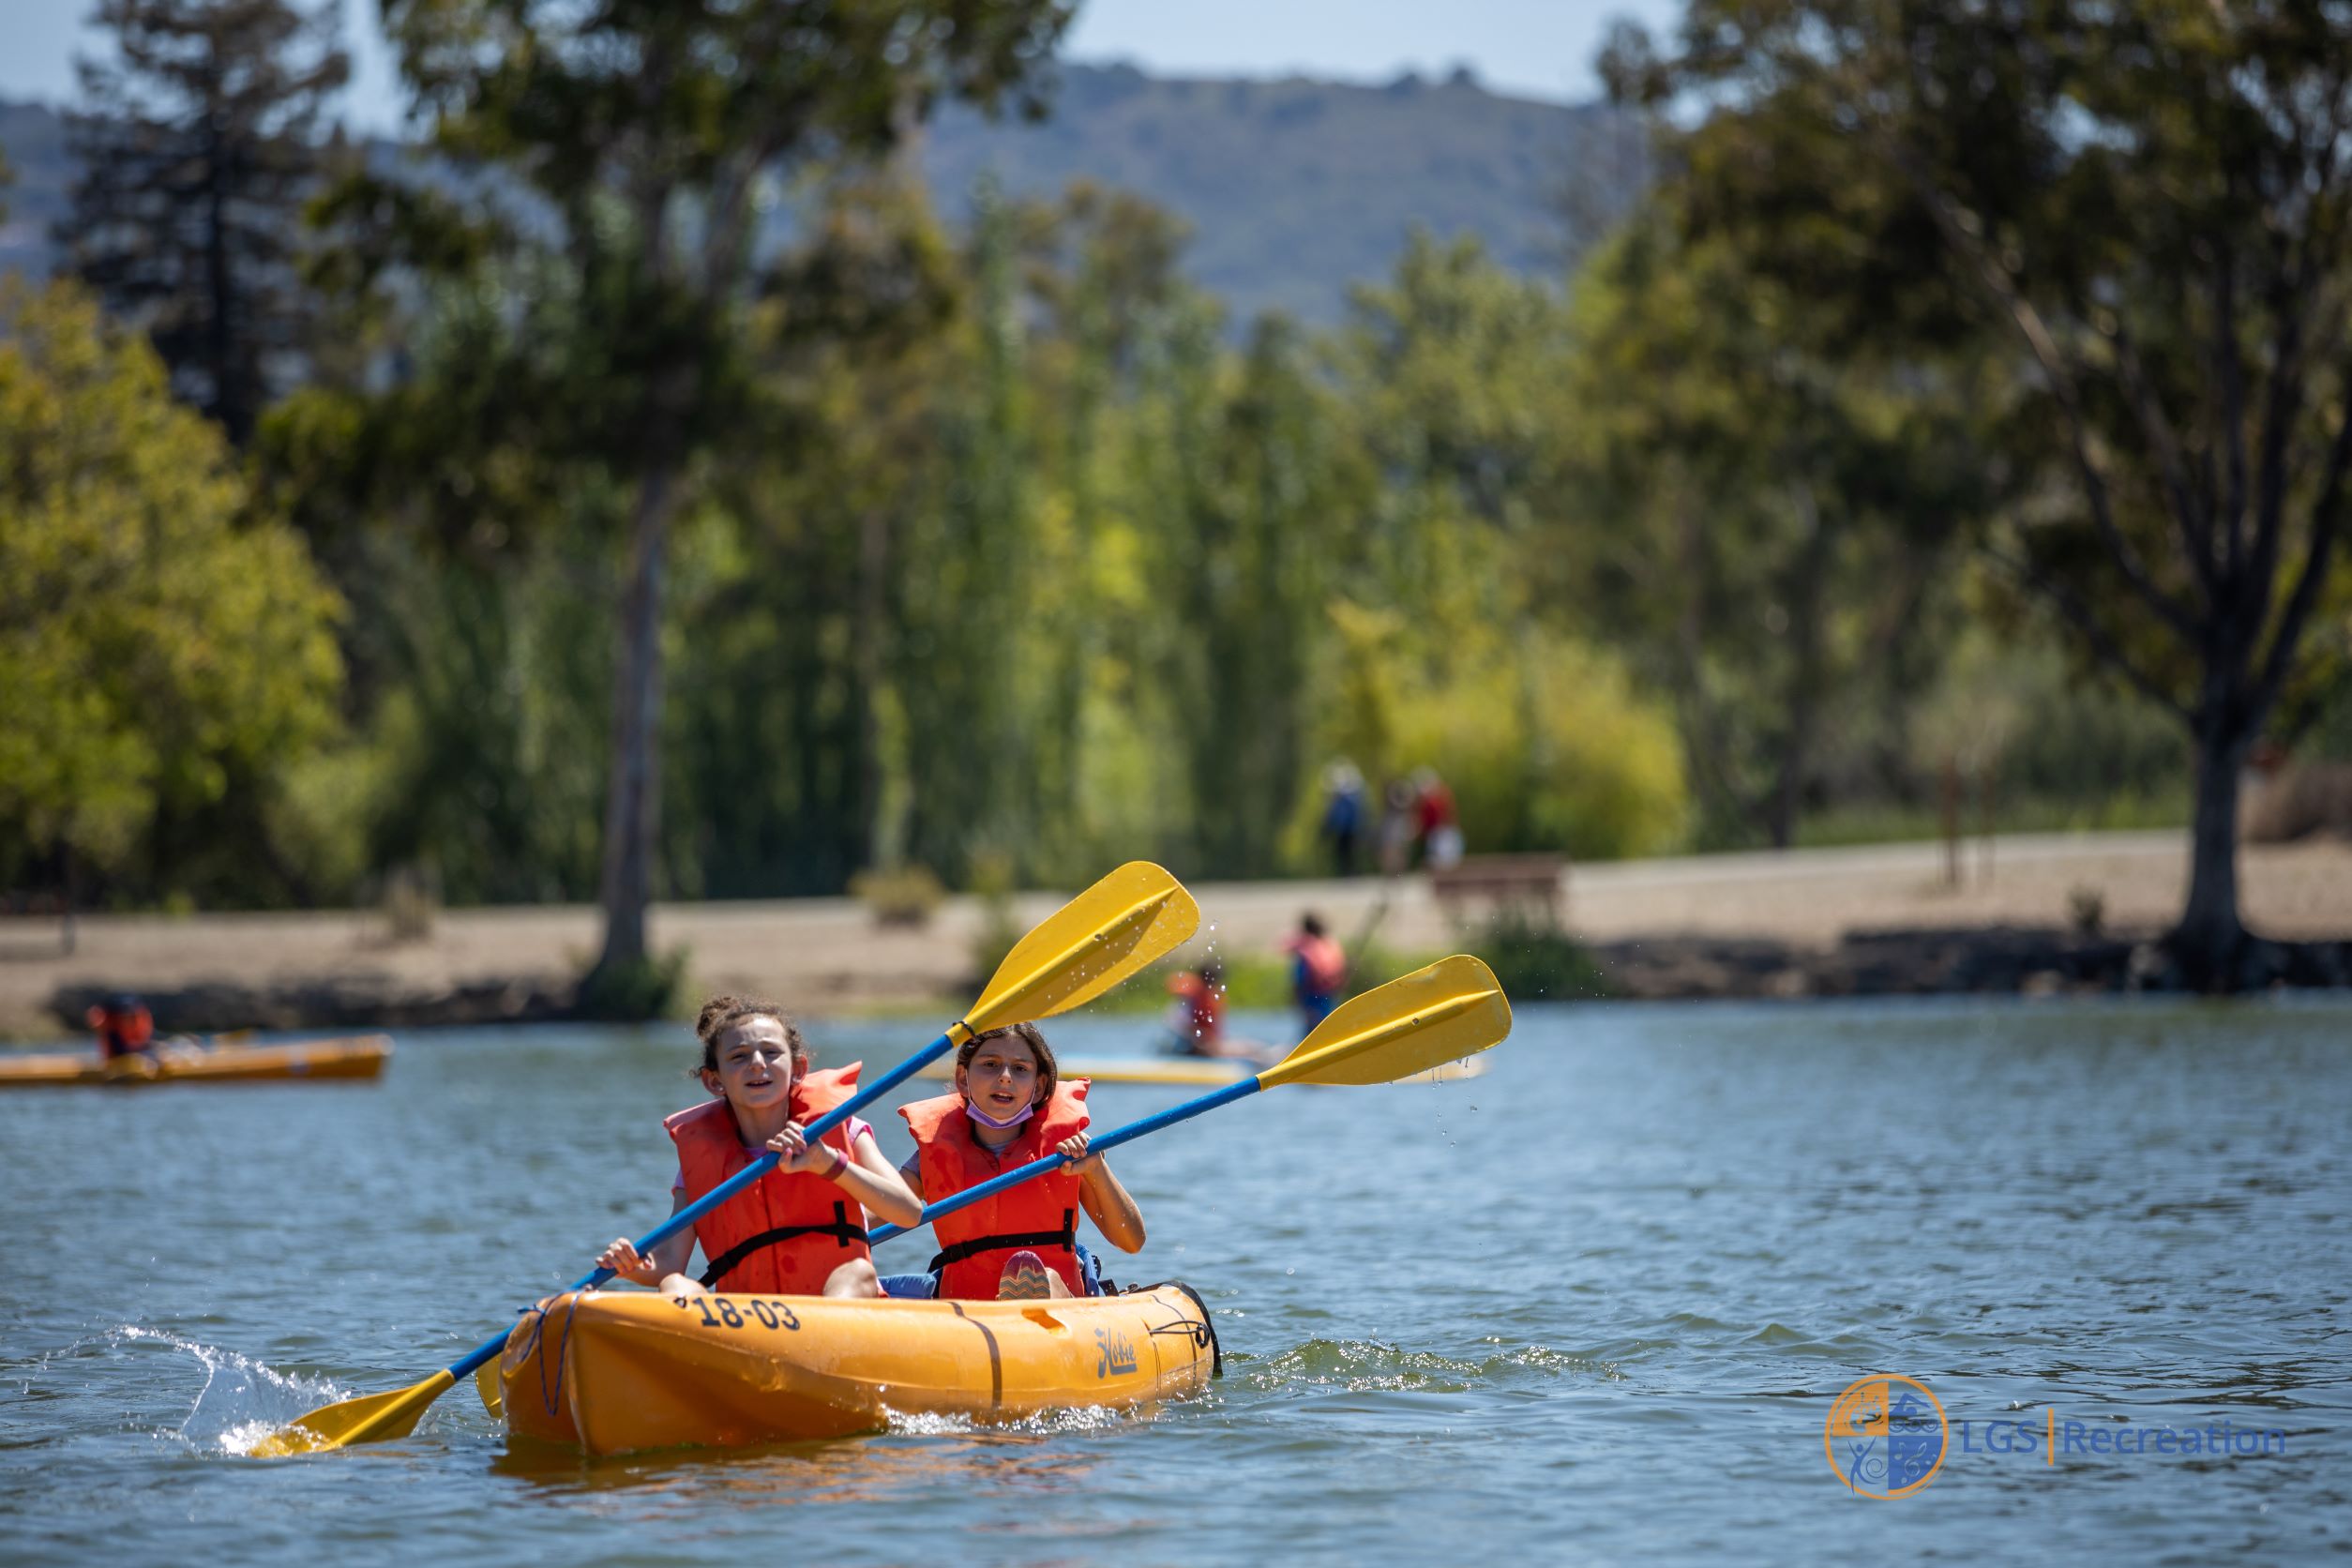 Kids in a kayak on vasona lake